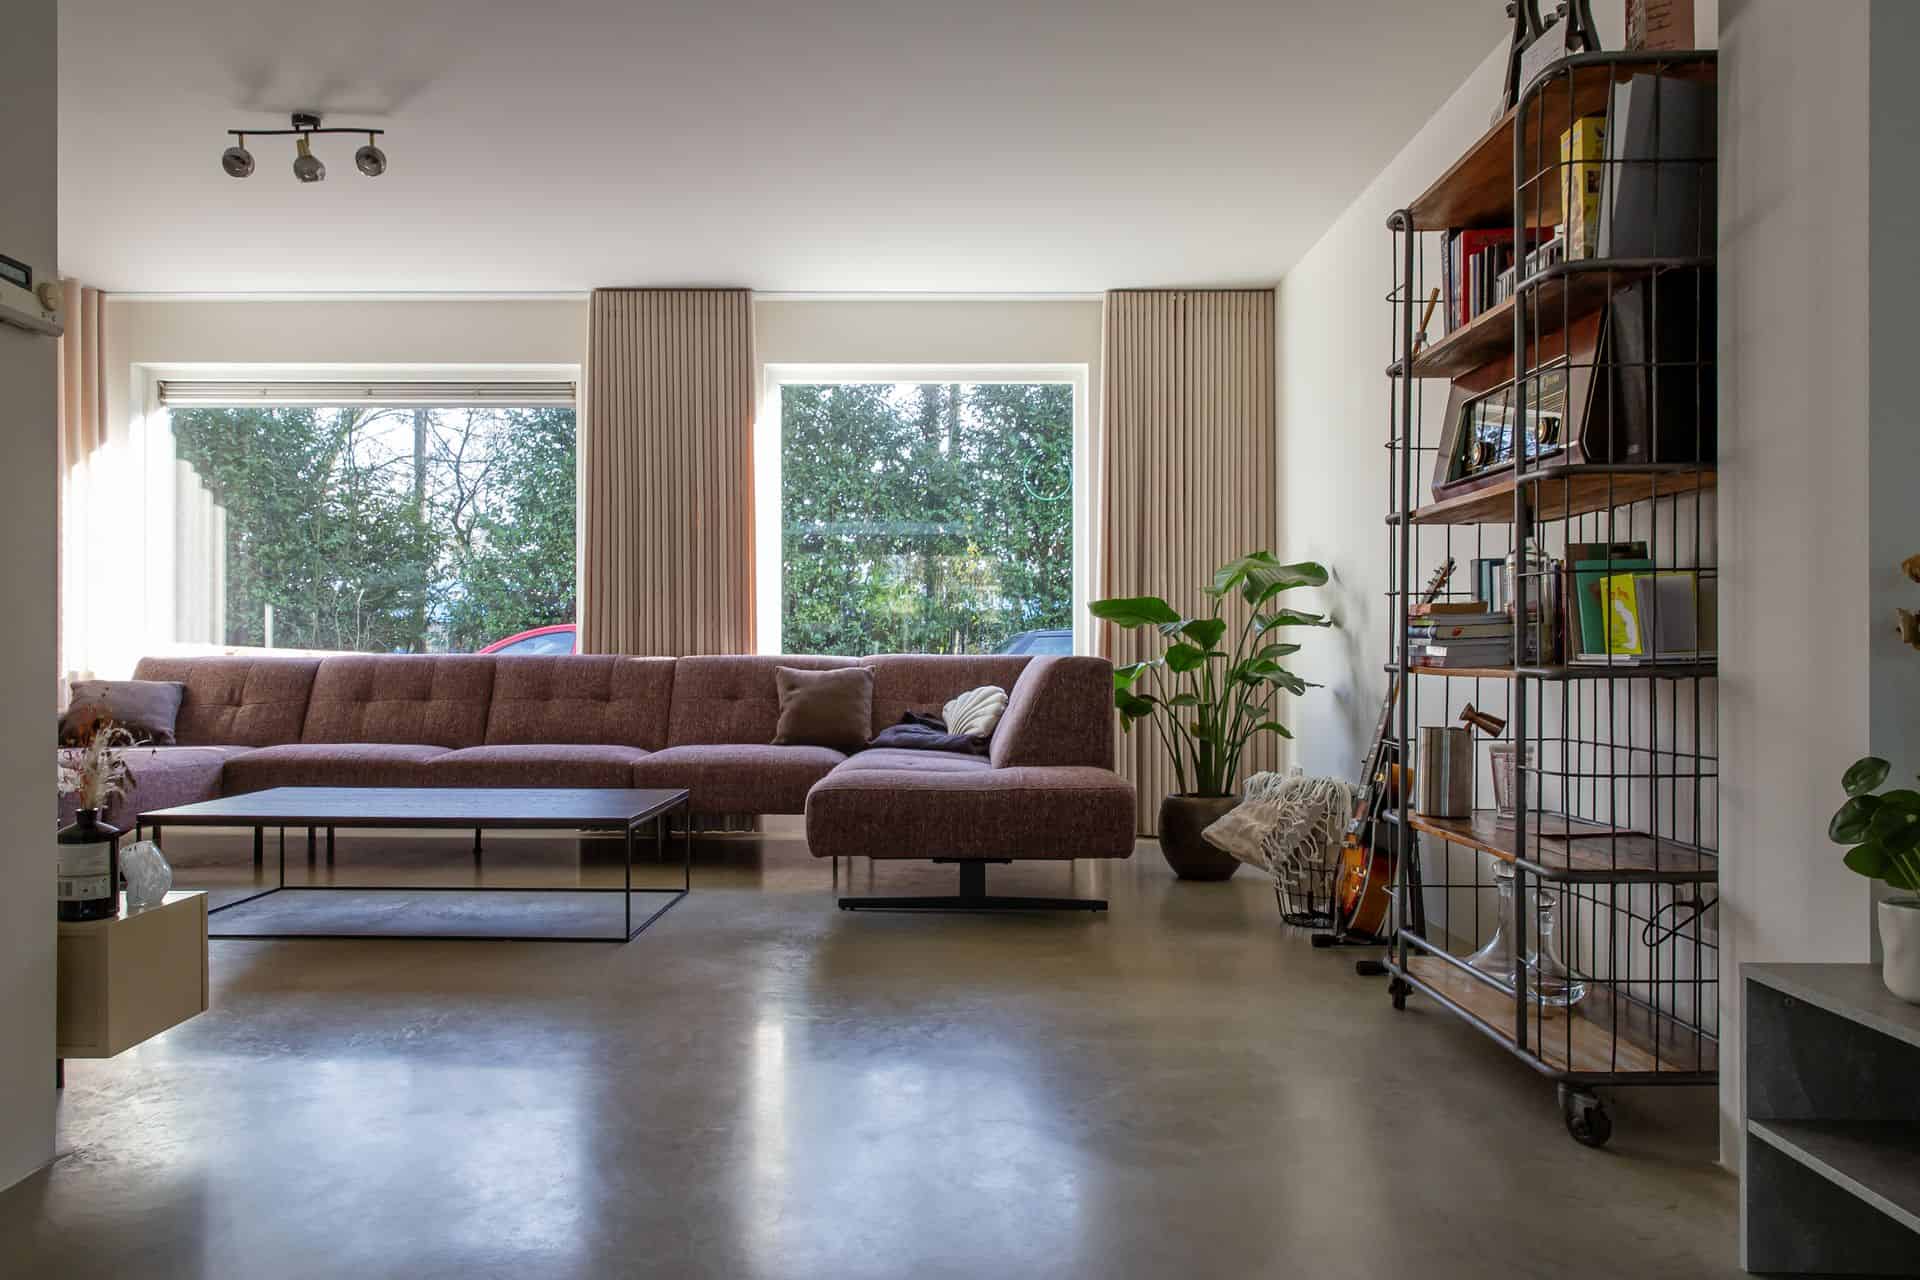 Woonkamer met een gevlinderde betonvloer in Sprang-Capelle. Ook staat er een plant op de vloer en een kast met wat boeken en accessoires.